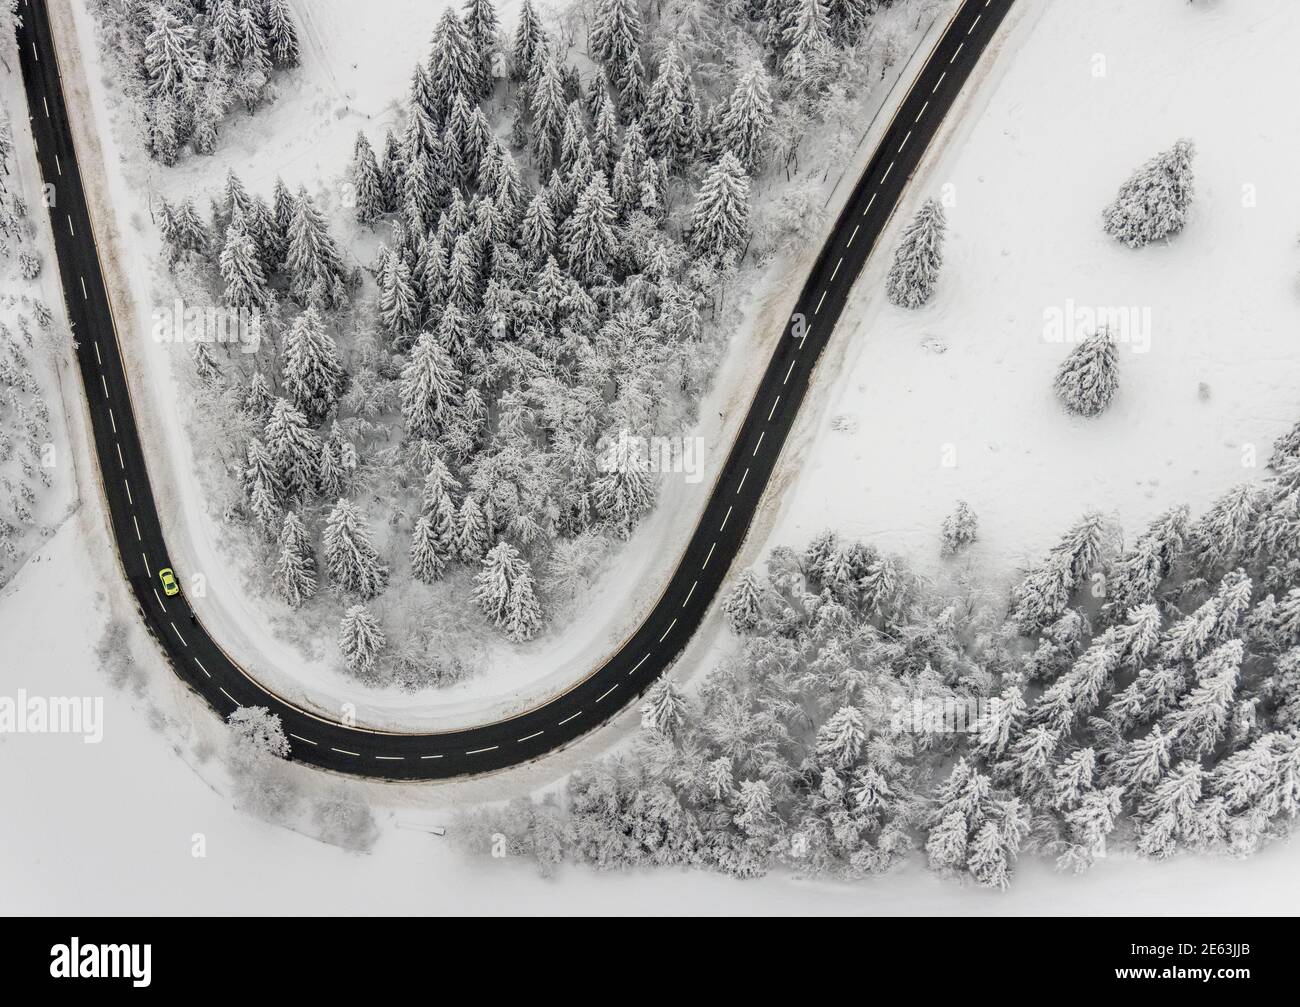 Luftaufnahme der verschneiten Winterlandschaft von Winterberg mit kurvenreichen Straßen und Wegen im Sauerland in Nordrhein-Westfalen, Deutschland, Sauerland, Europ Stockfoto